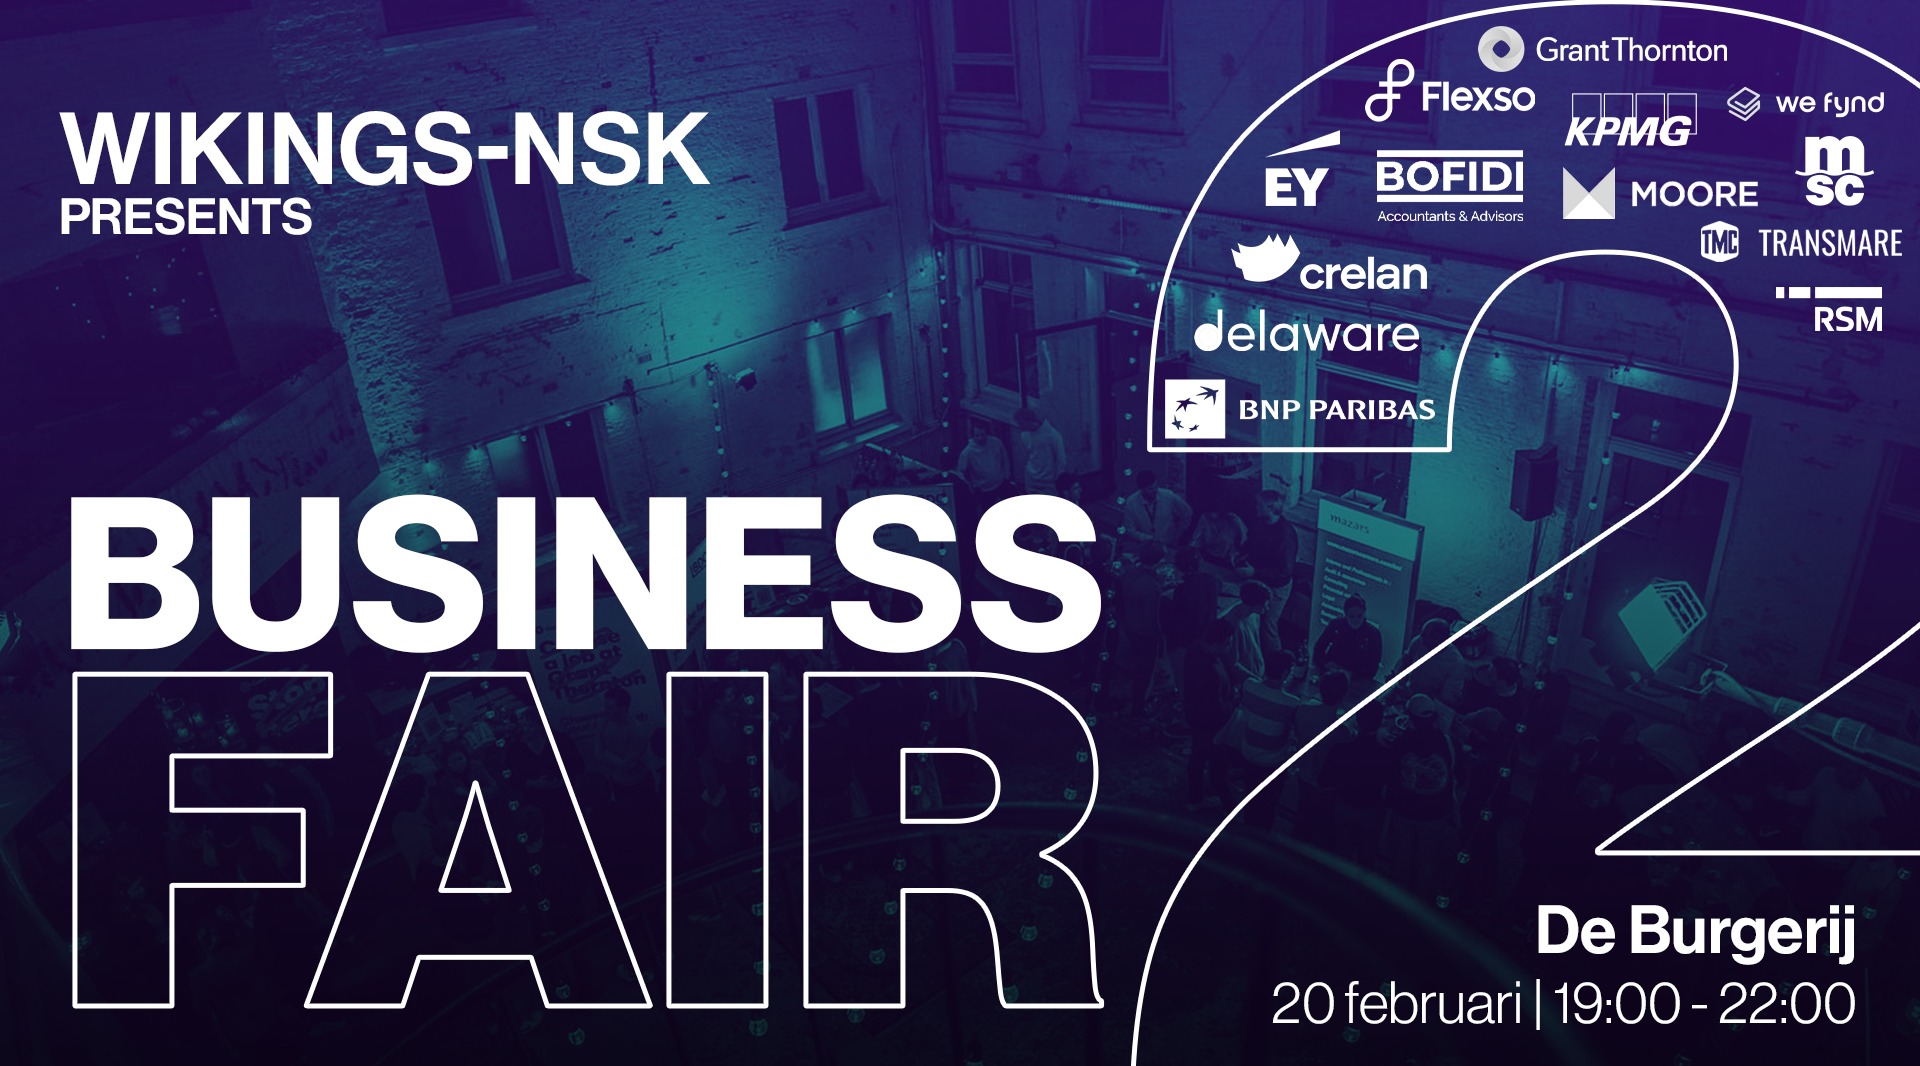 wikings-nsk-business-fair-2